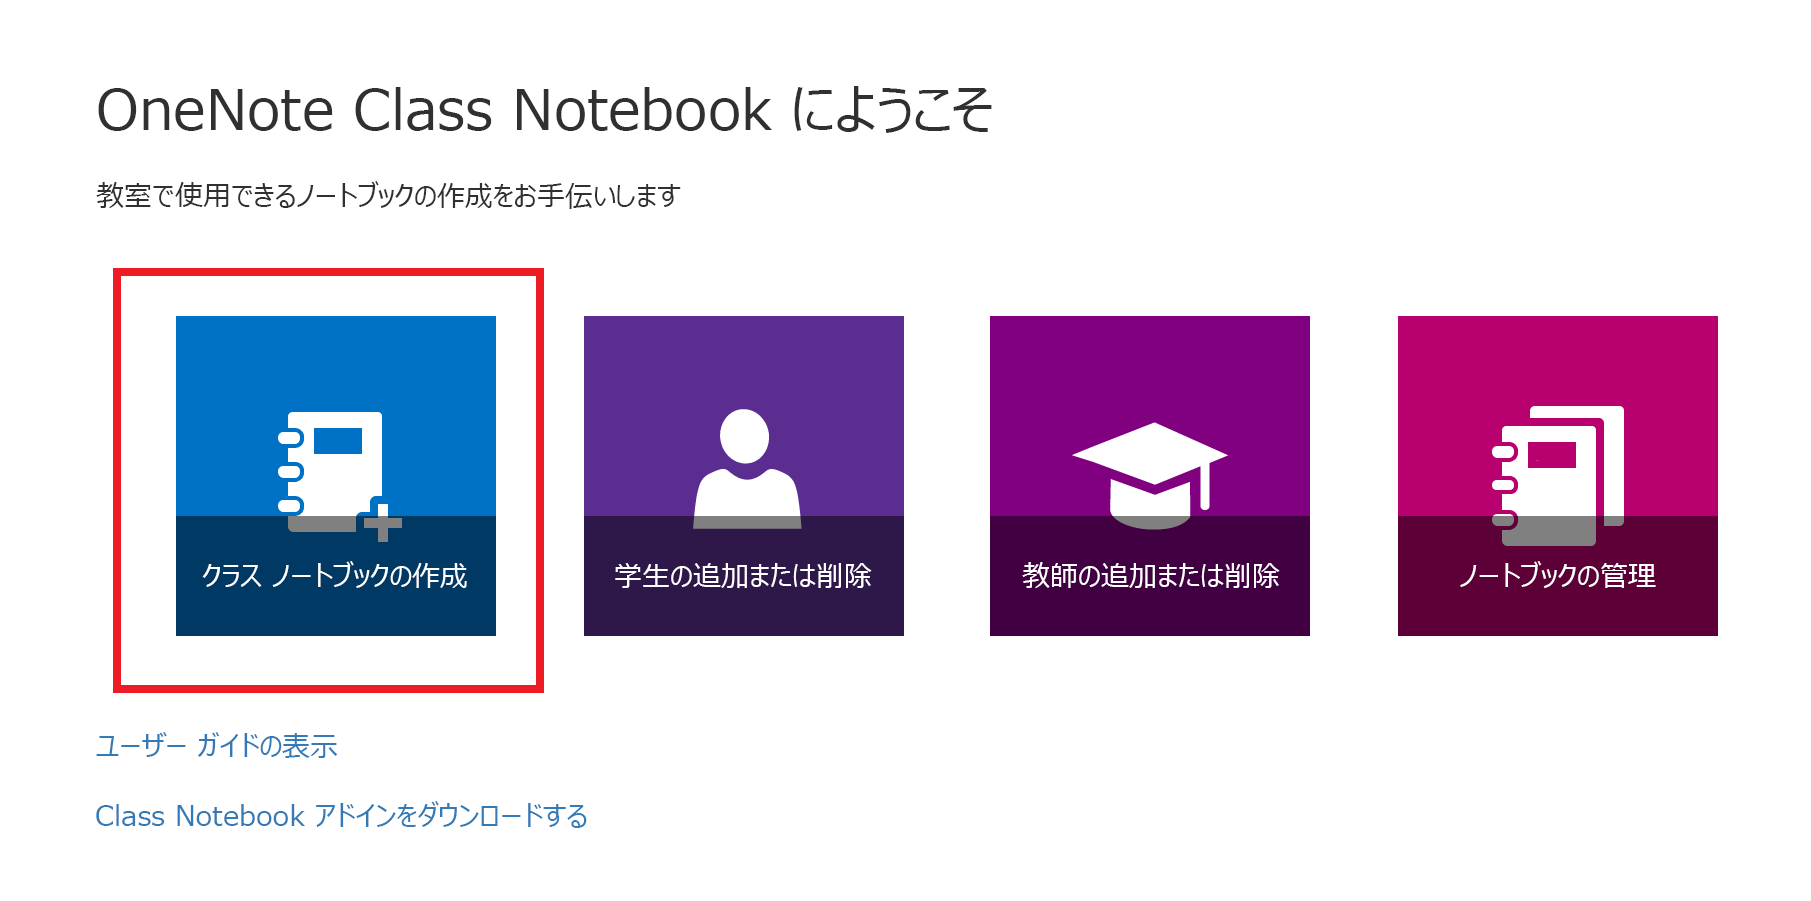 Class Notebook アプリのウェルカム ページのスクリーンショットです。